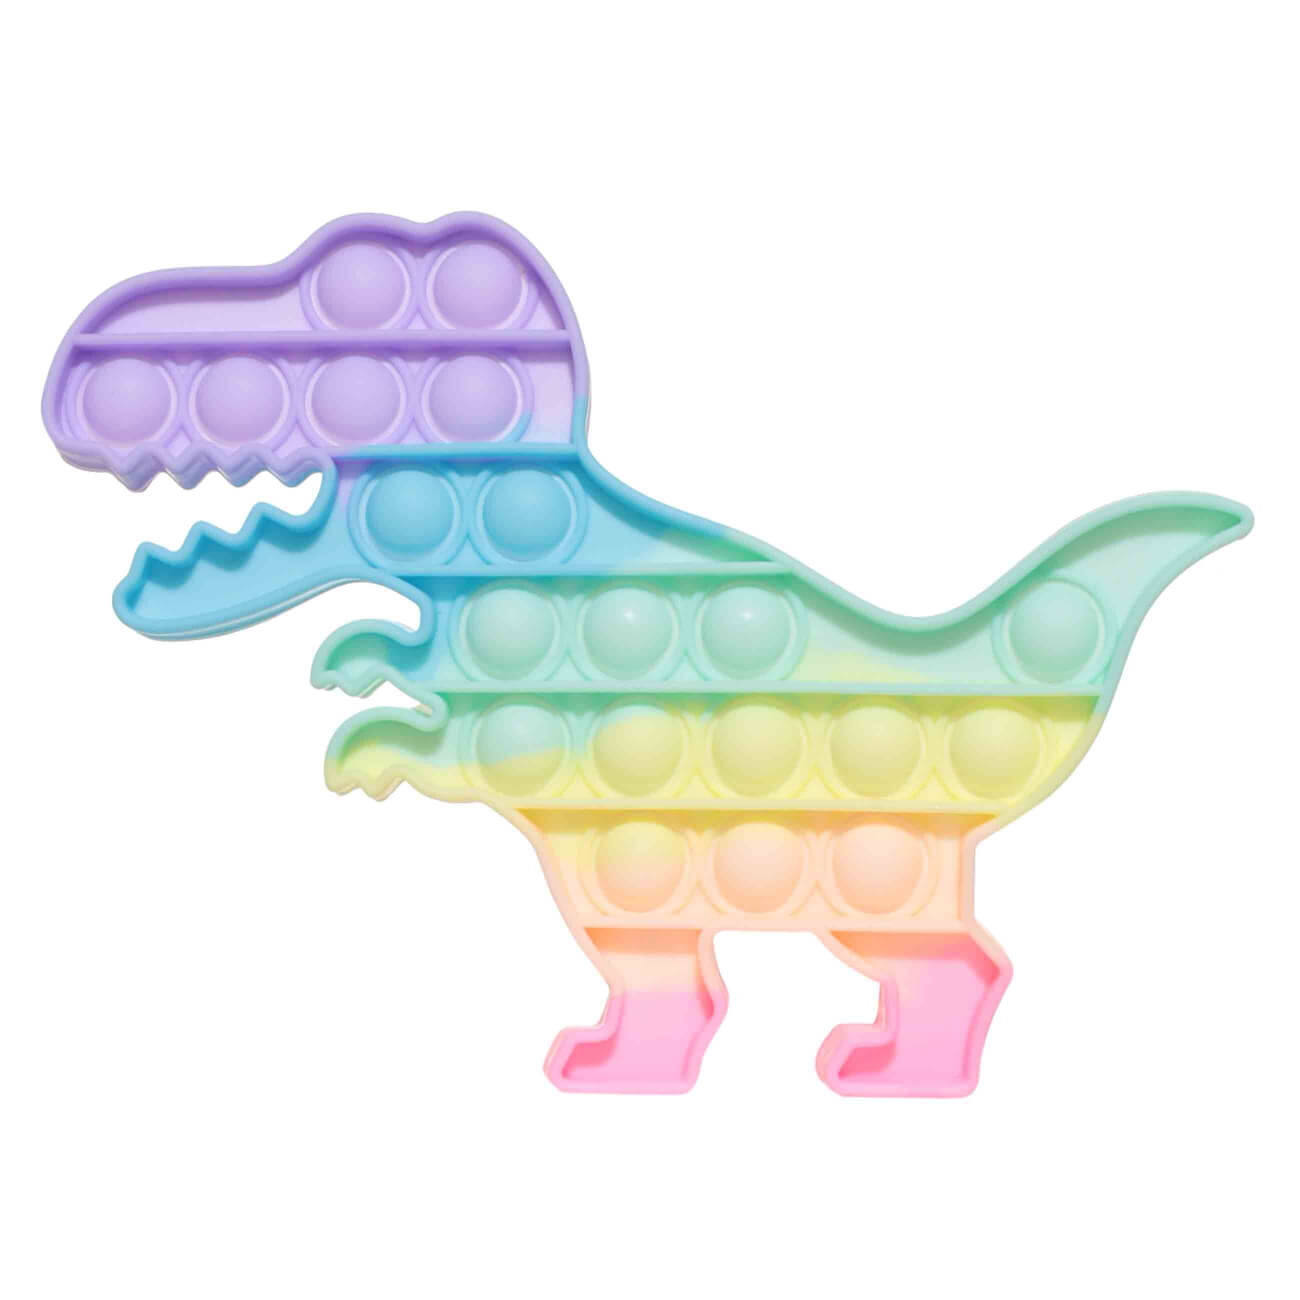 Игрушка-антистресс Pop-it, 19х14 см, силикон, цветная, Динозавр, Pop-it интерактивная игрушка динозавр трицератопс